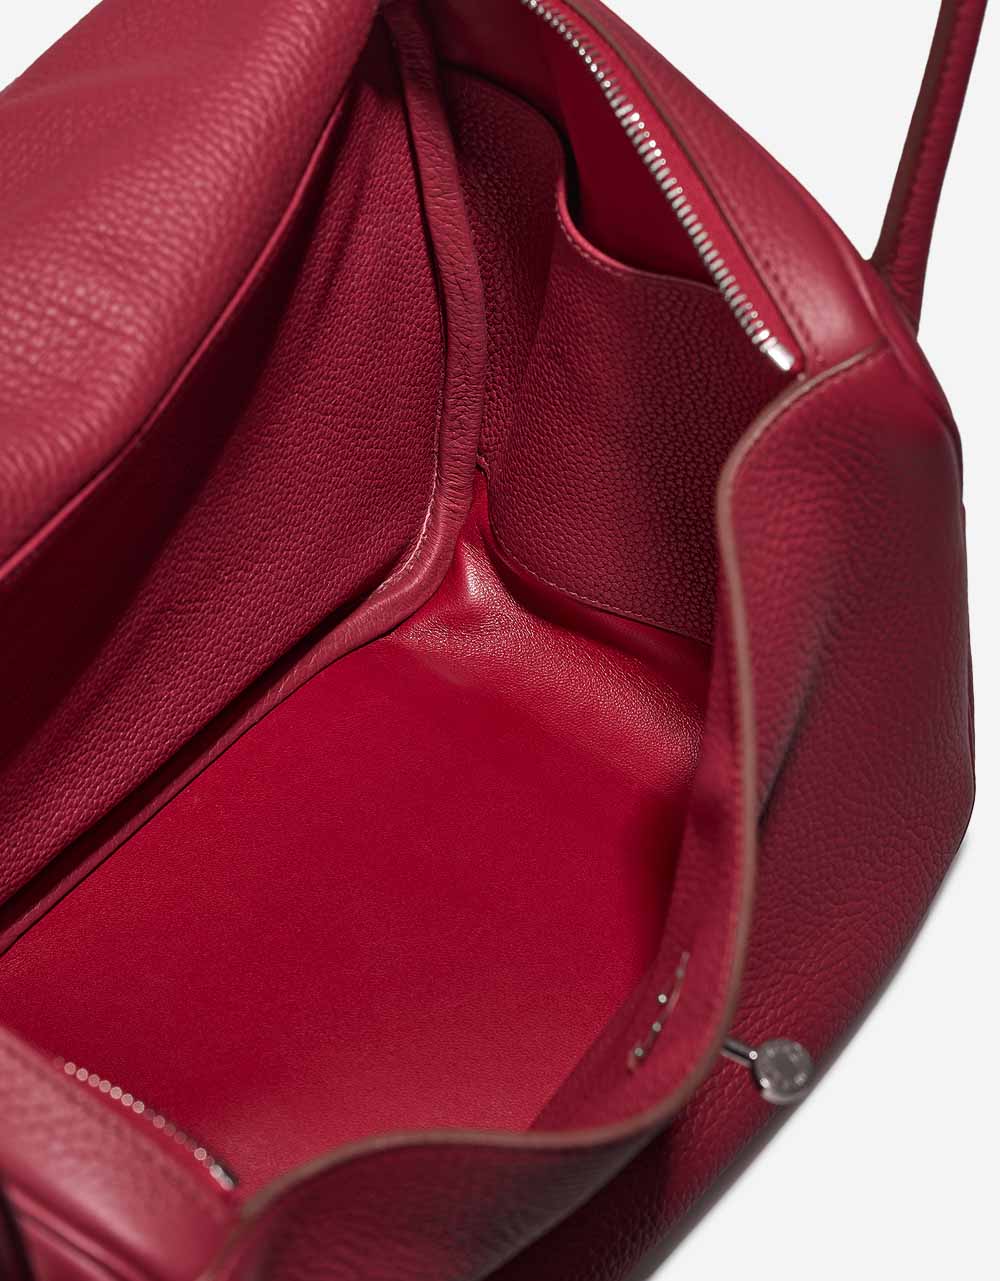 Hermès Lindy 34 Rubis Inside | Verkaufen Sie Ihre Designer-Tasche auf Saclab.com